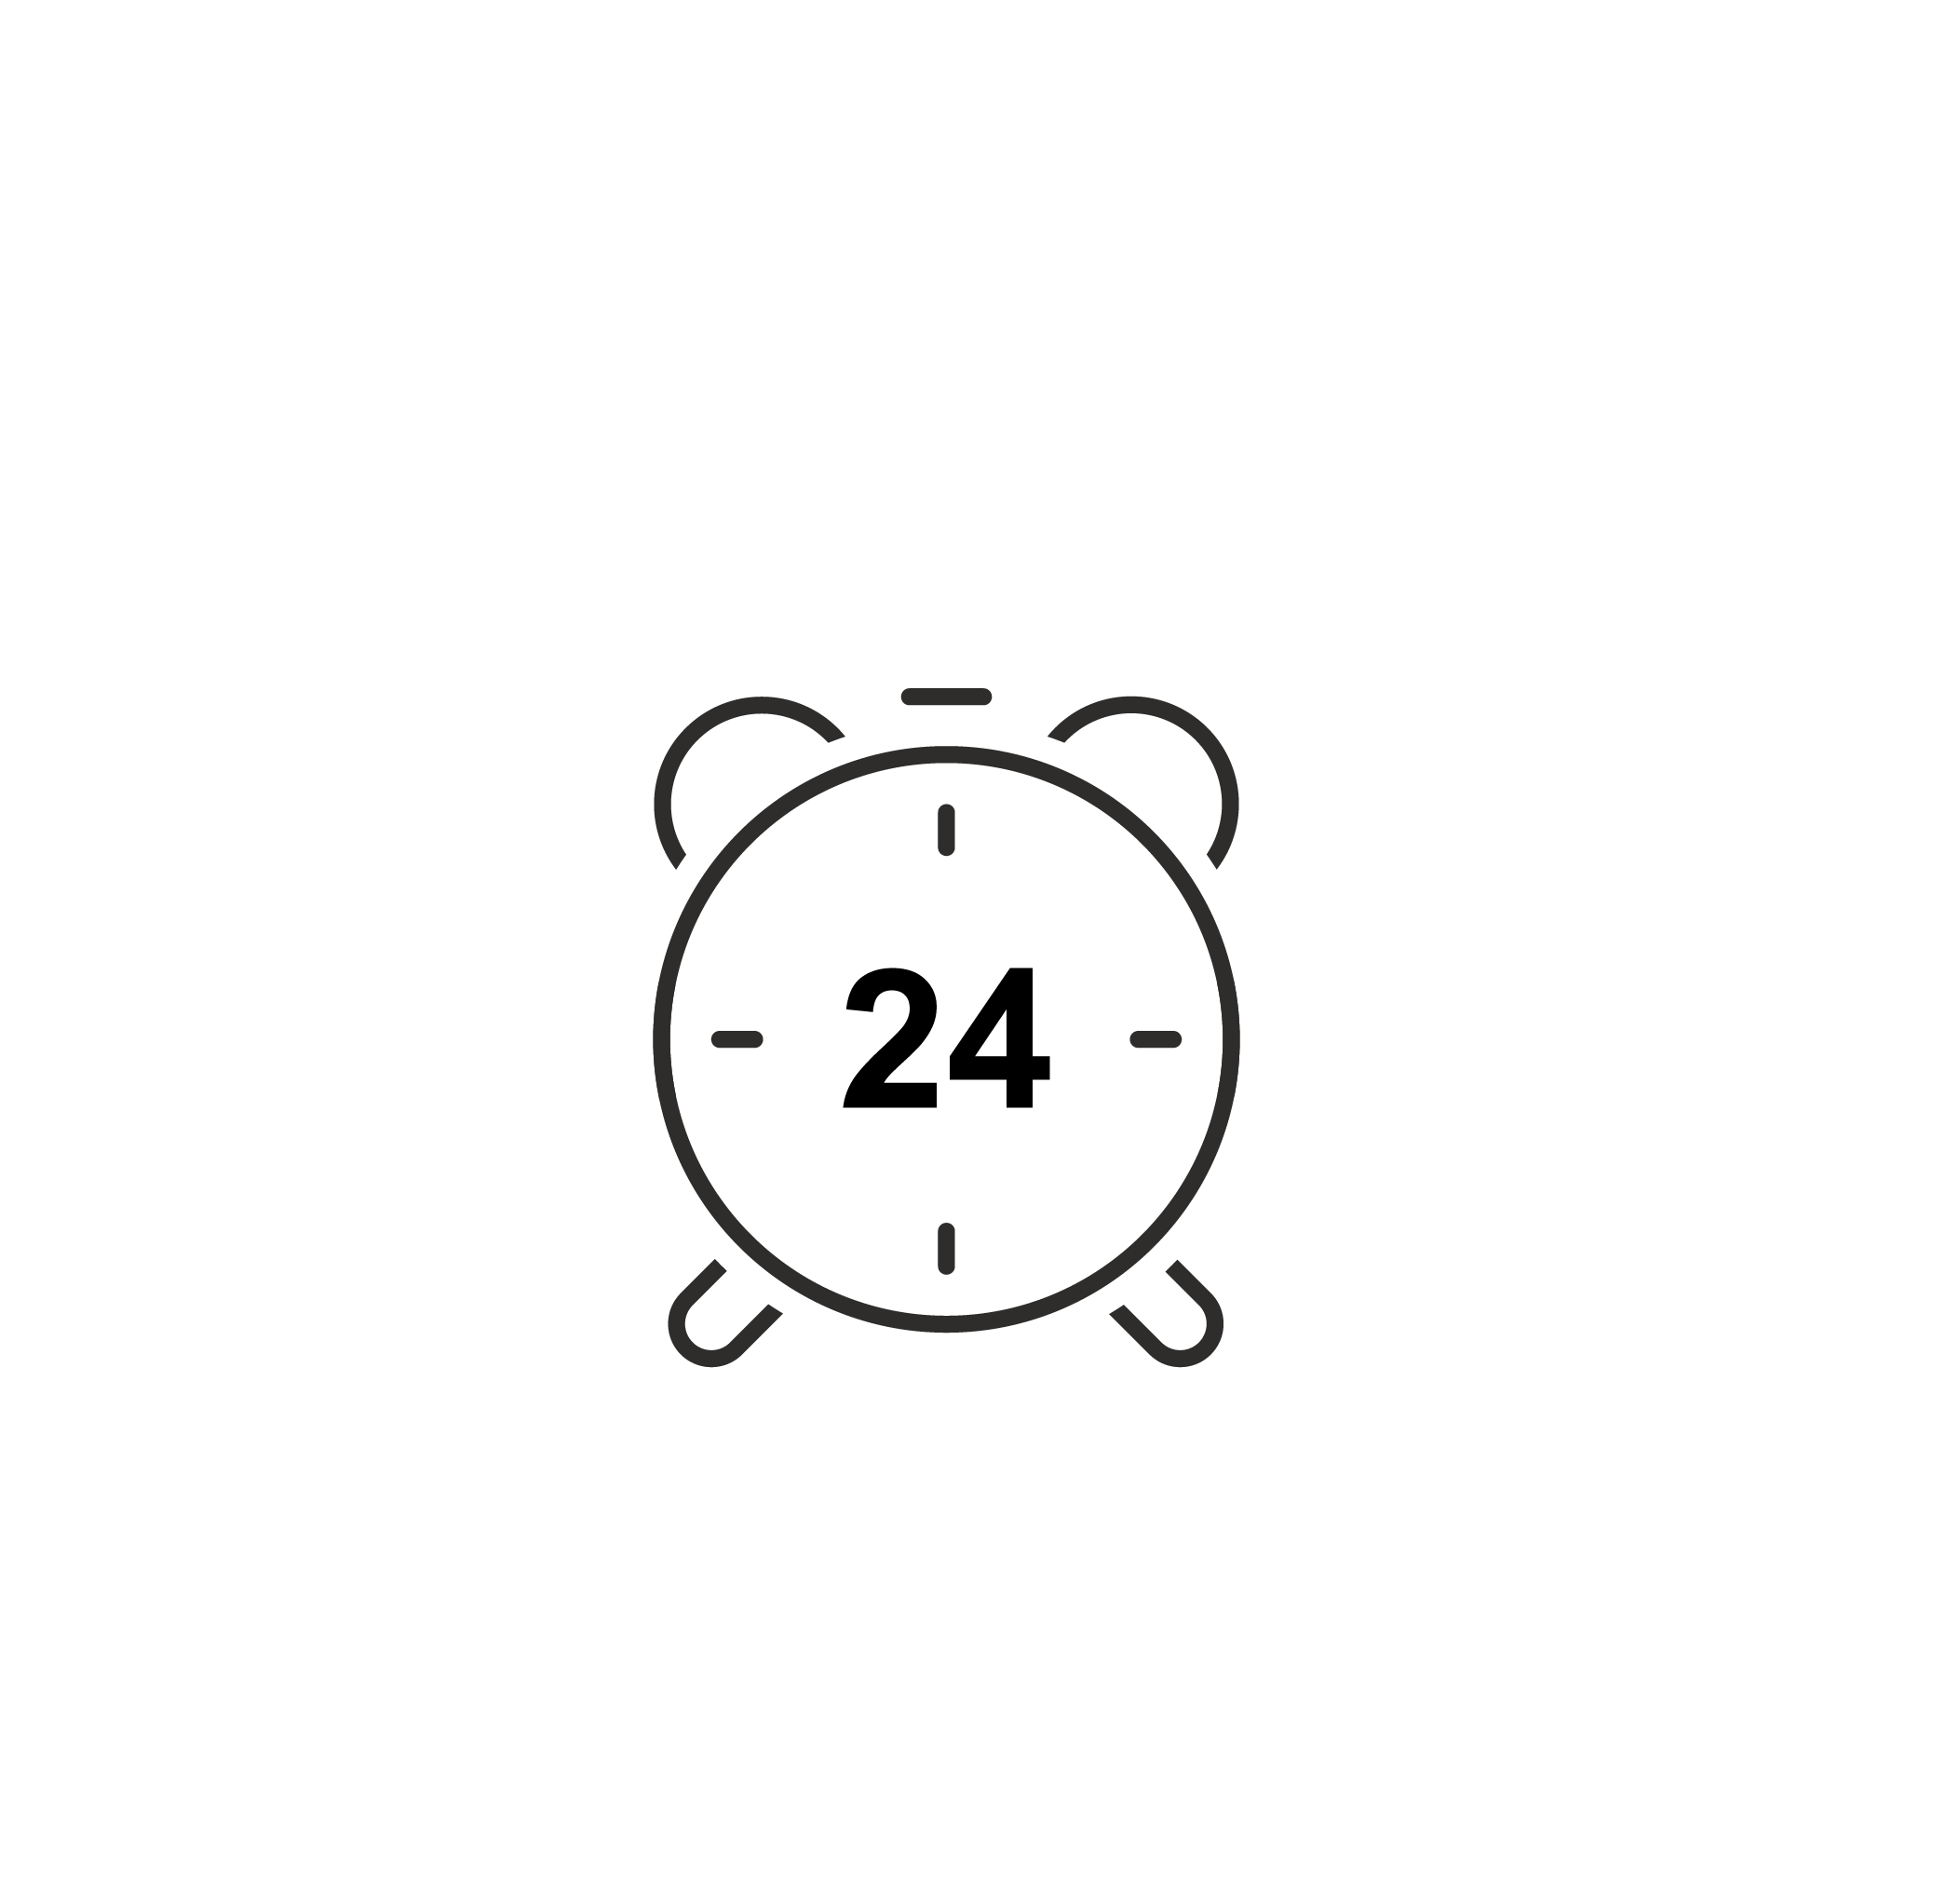 24 hour clock